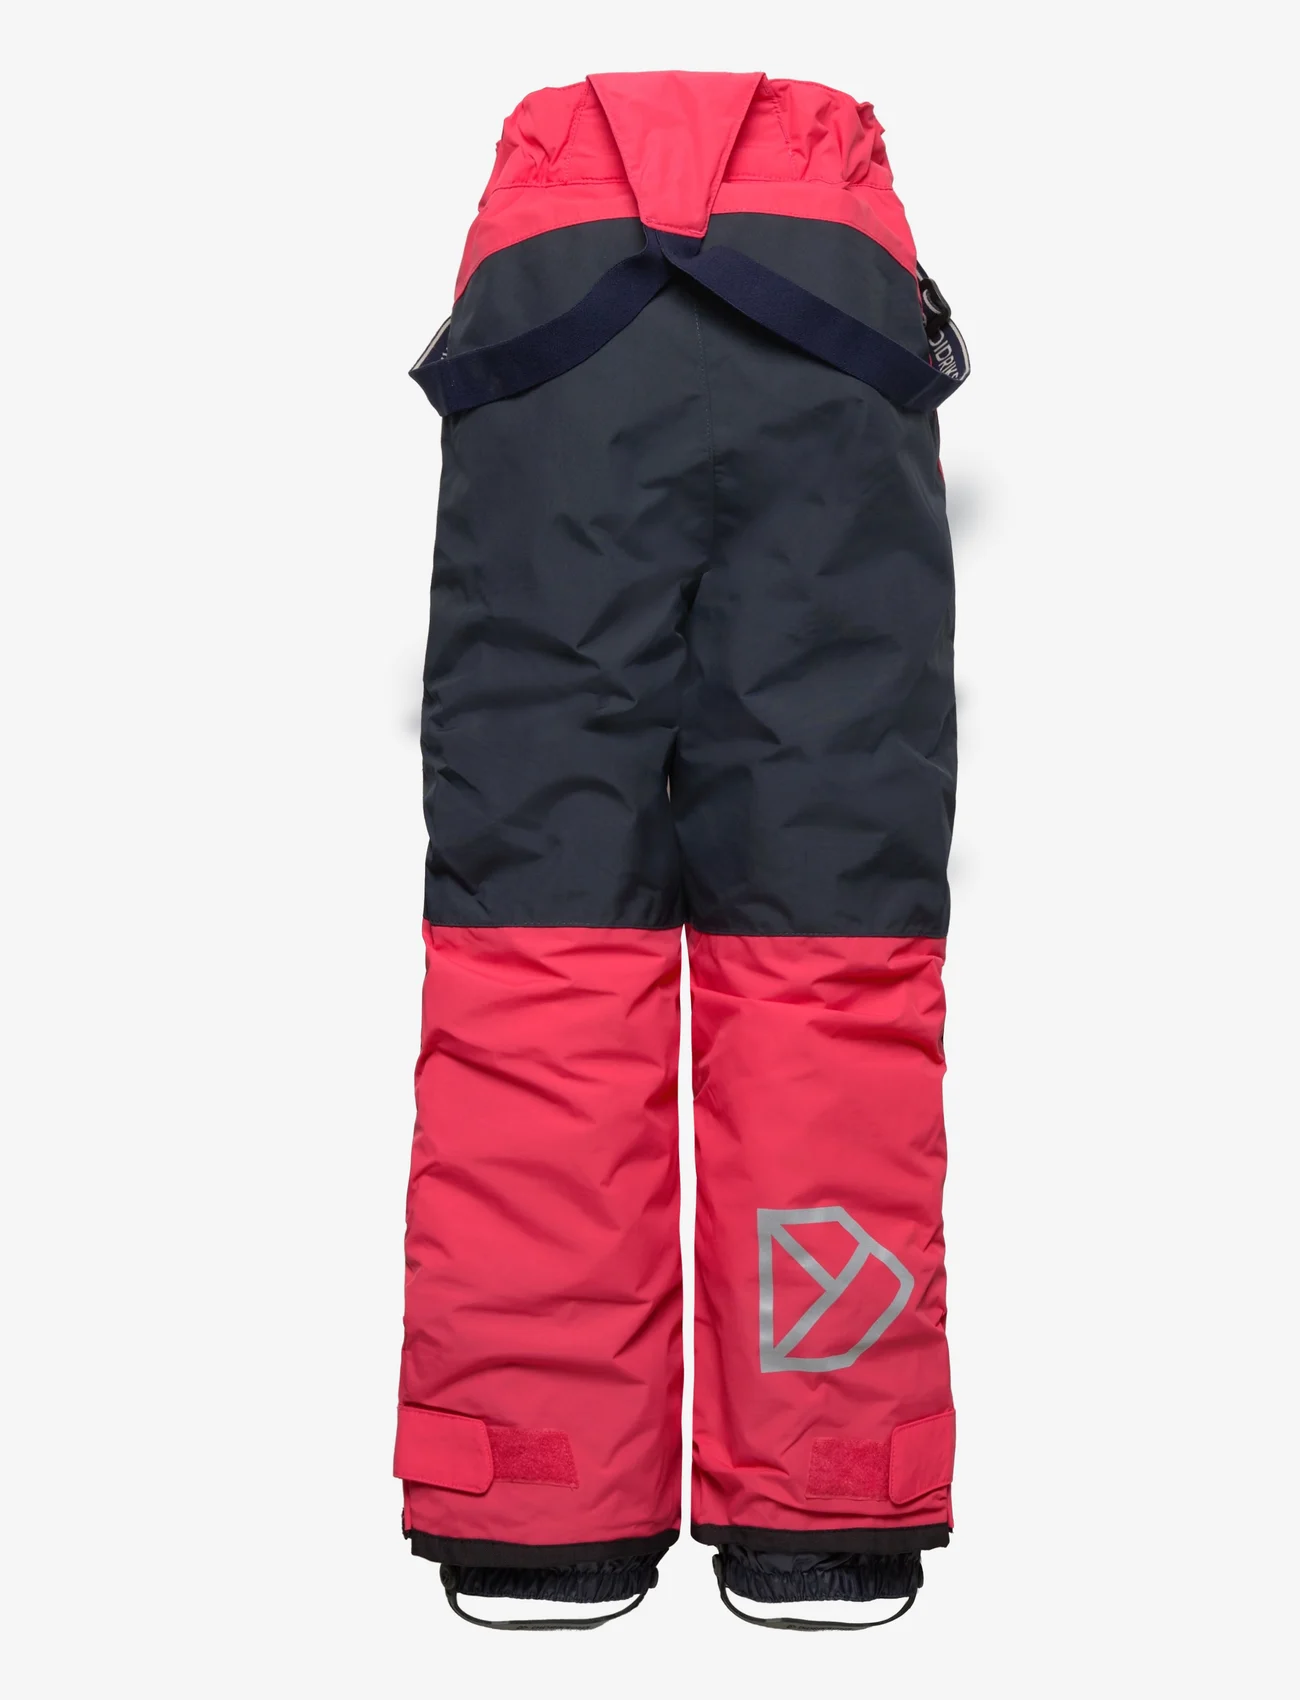 Didriksons - IDRE KIDS PANTS 6 - pantalons de ski - modern pink - 1